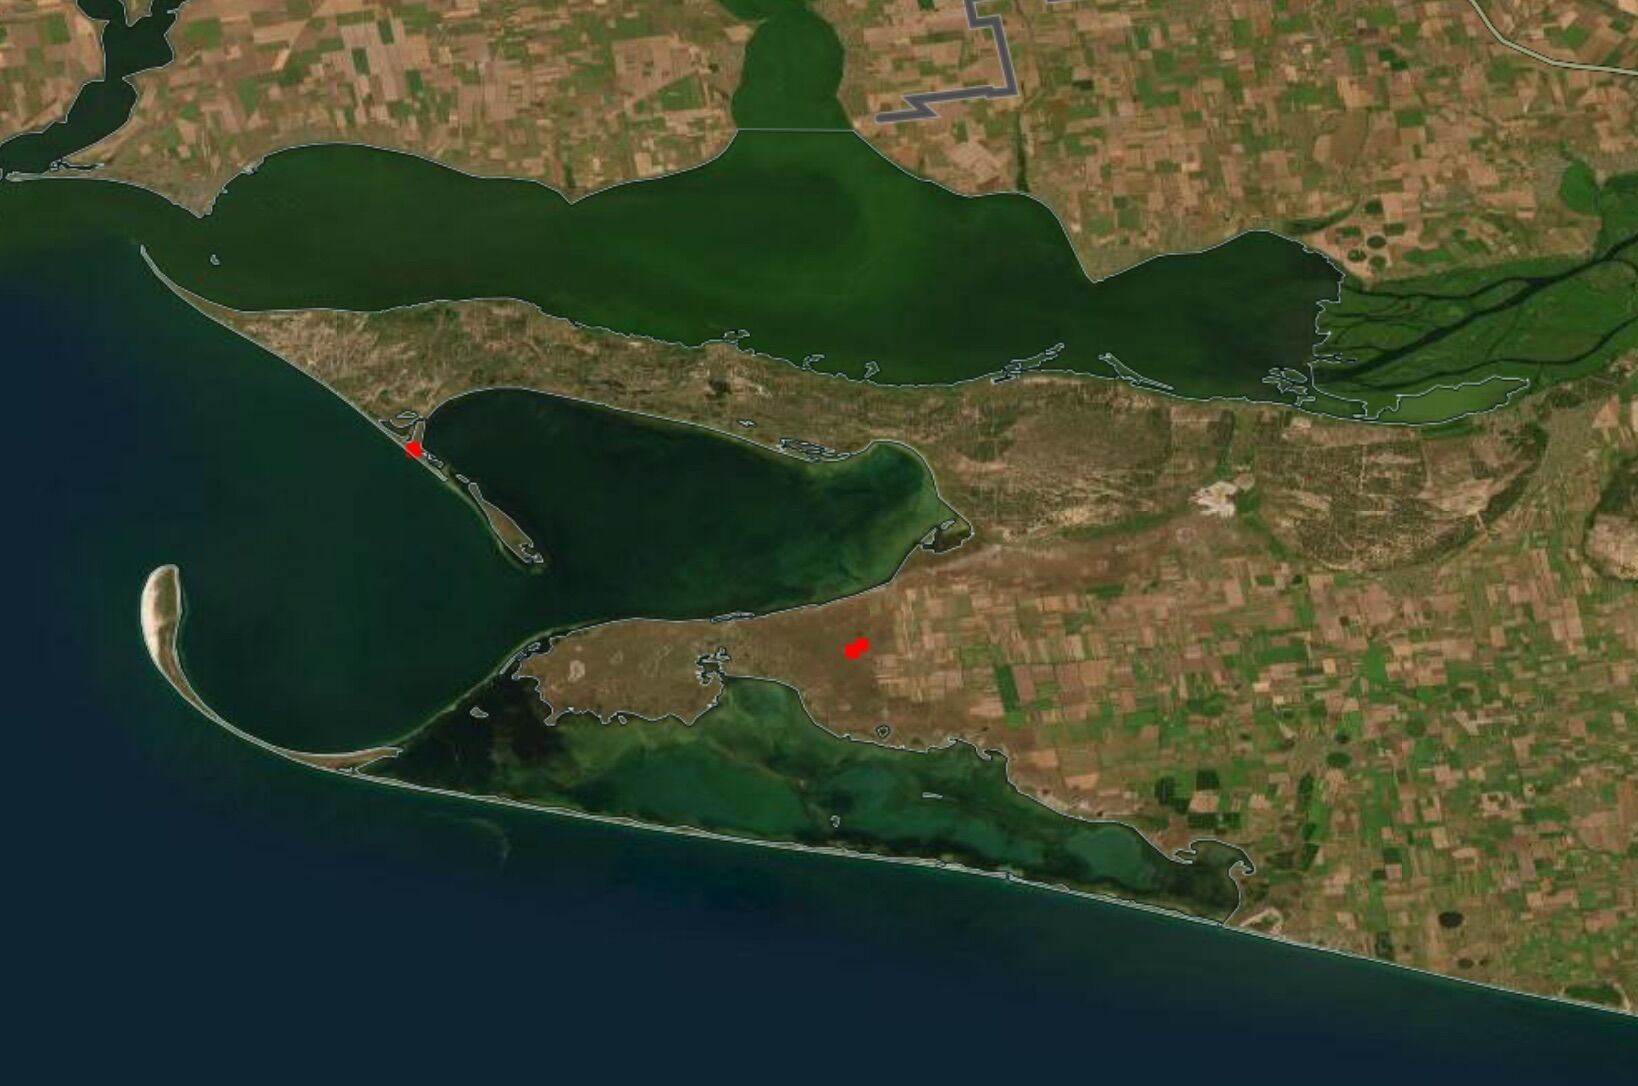 Спецпроект NASA зафиксировал три очага пожара в районе Кинбурна и Ягорлицкого залива 28 февраля